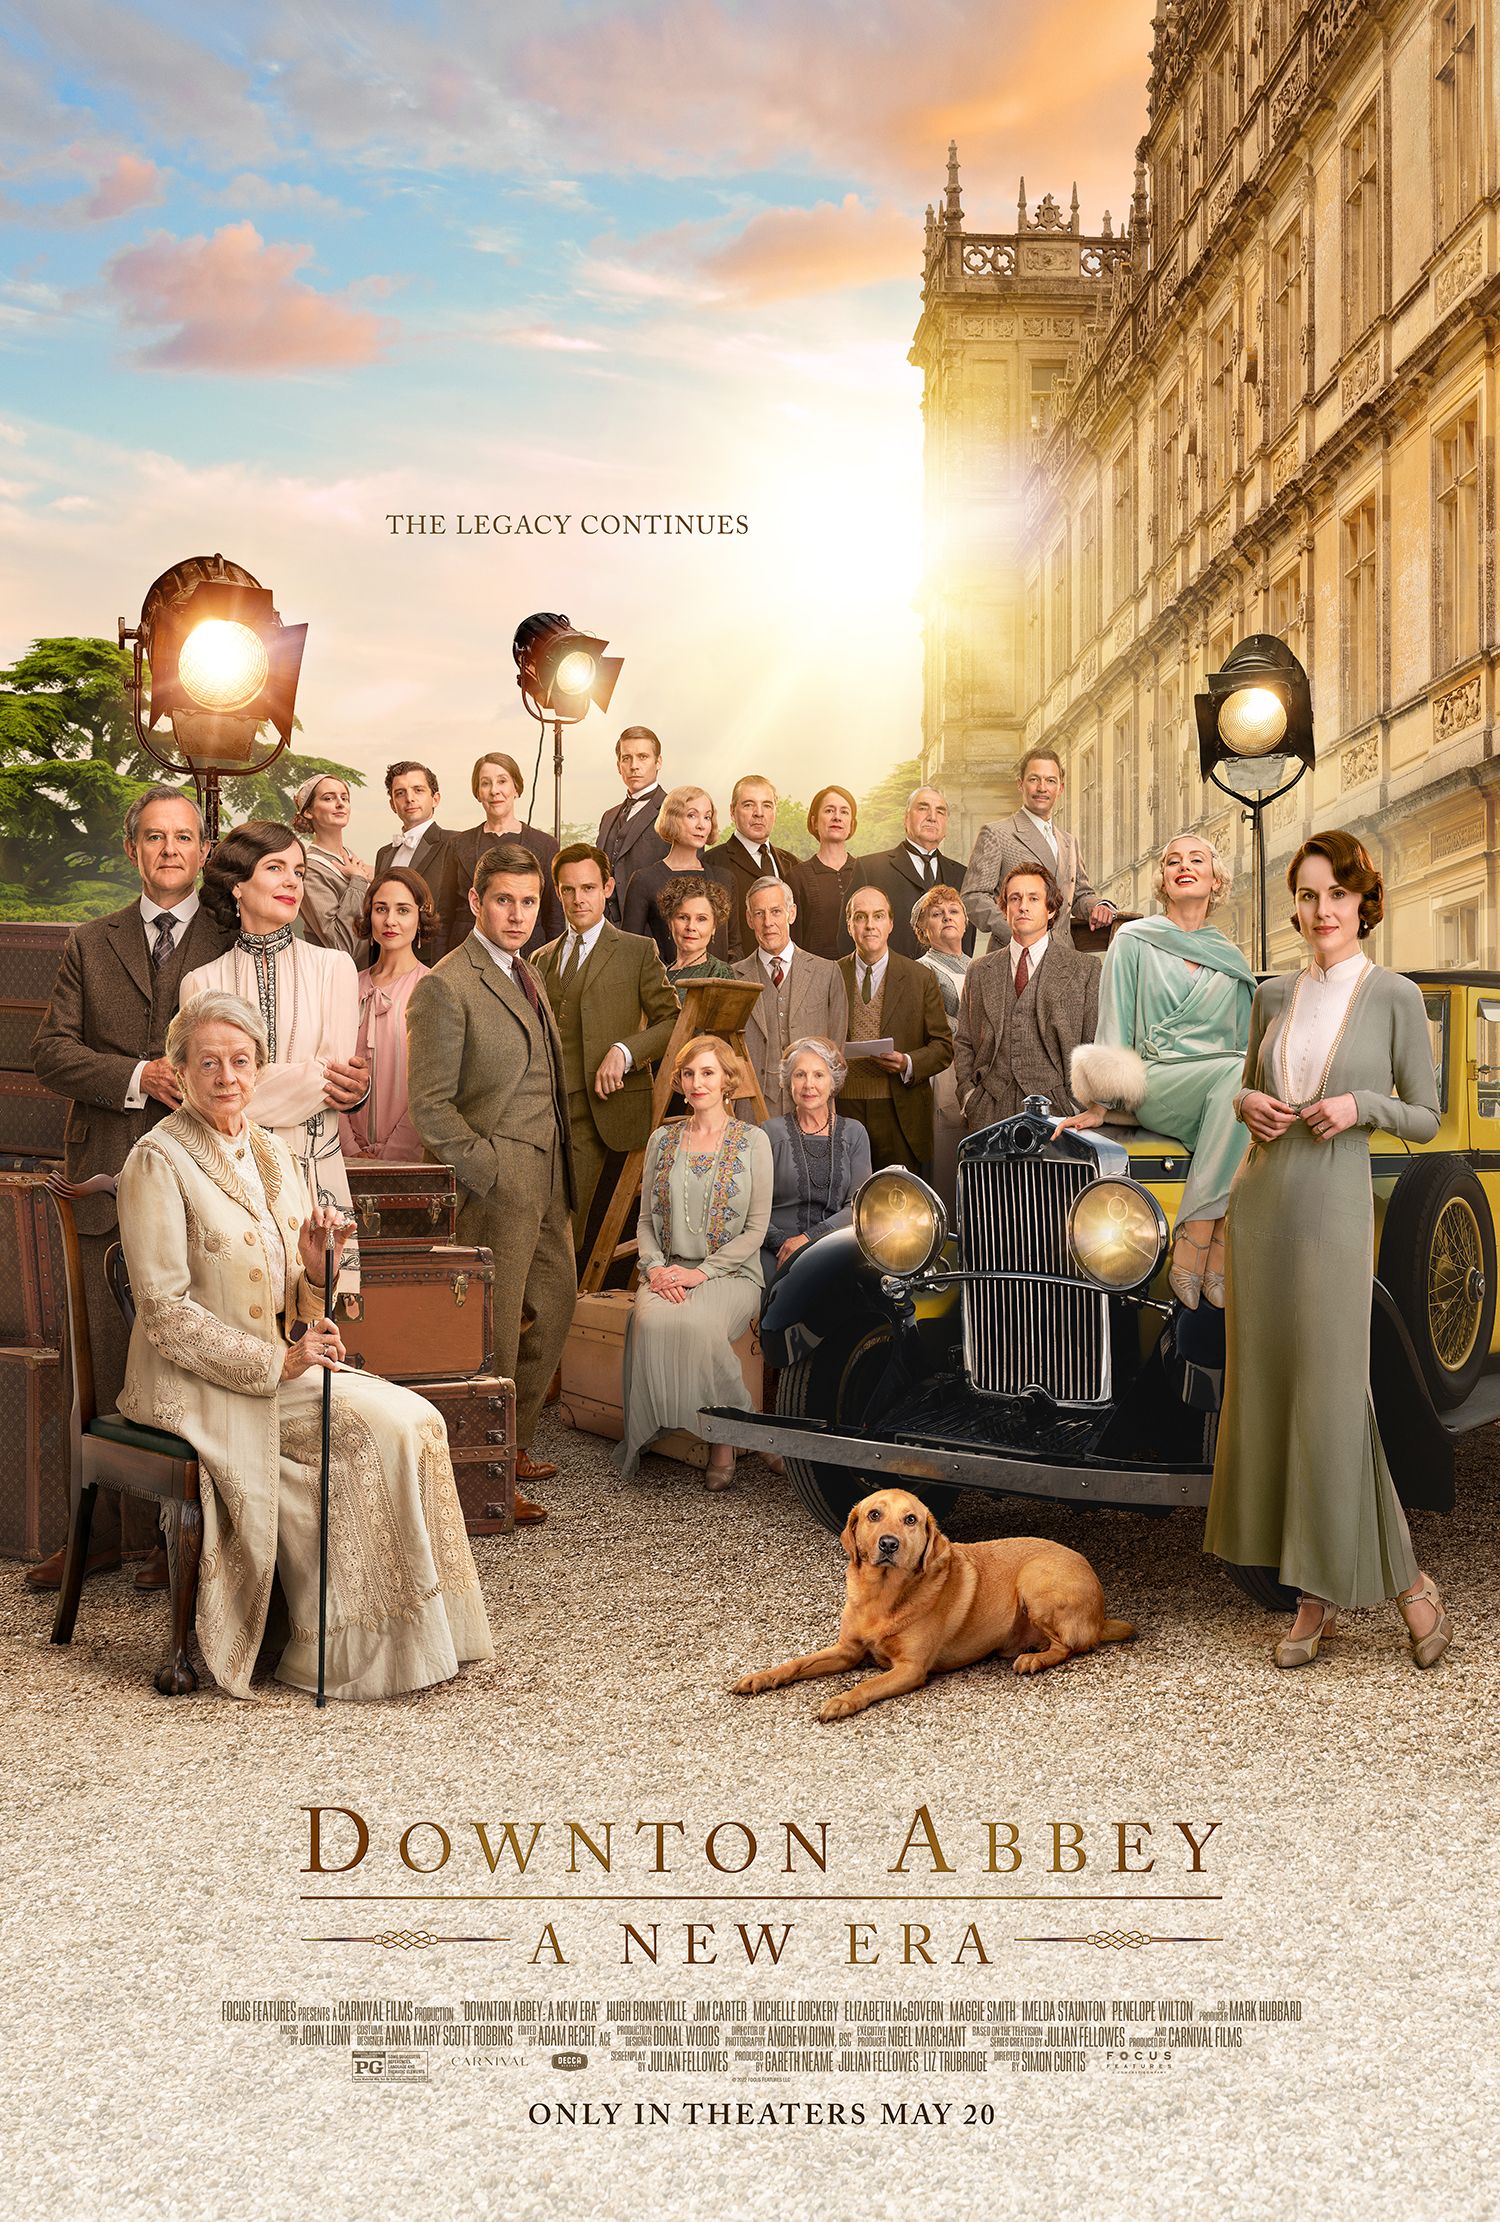 downton-abbey-2-poster